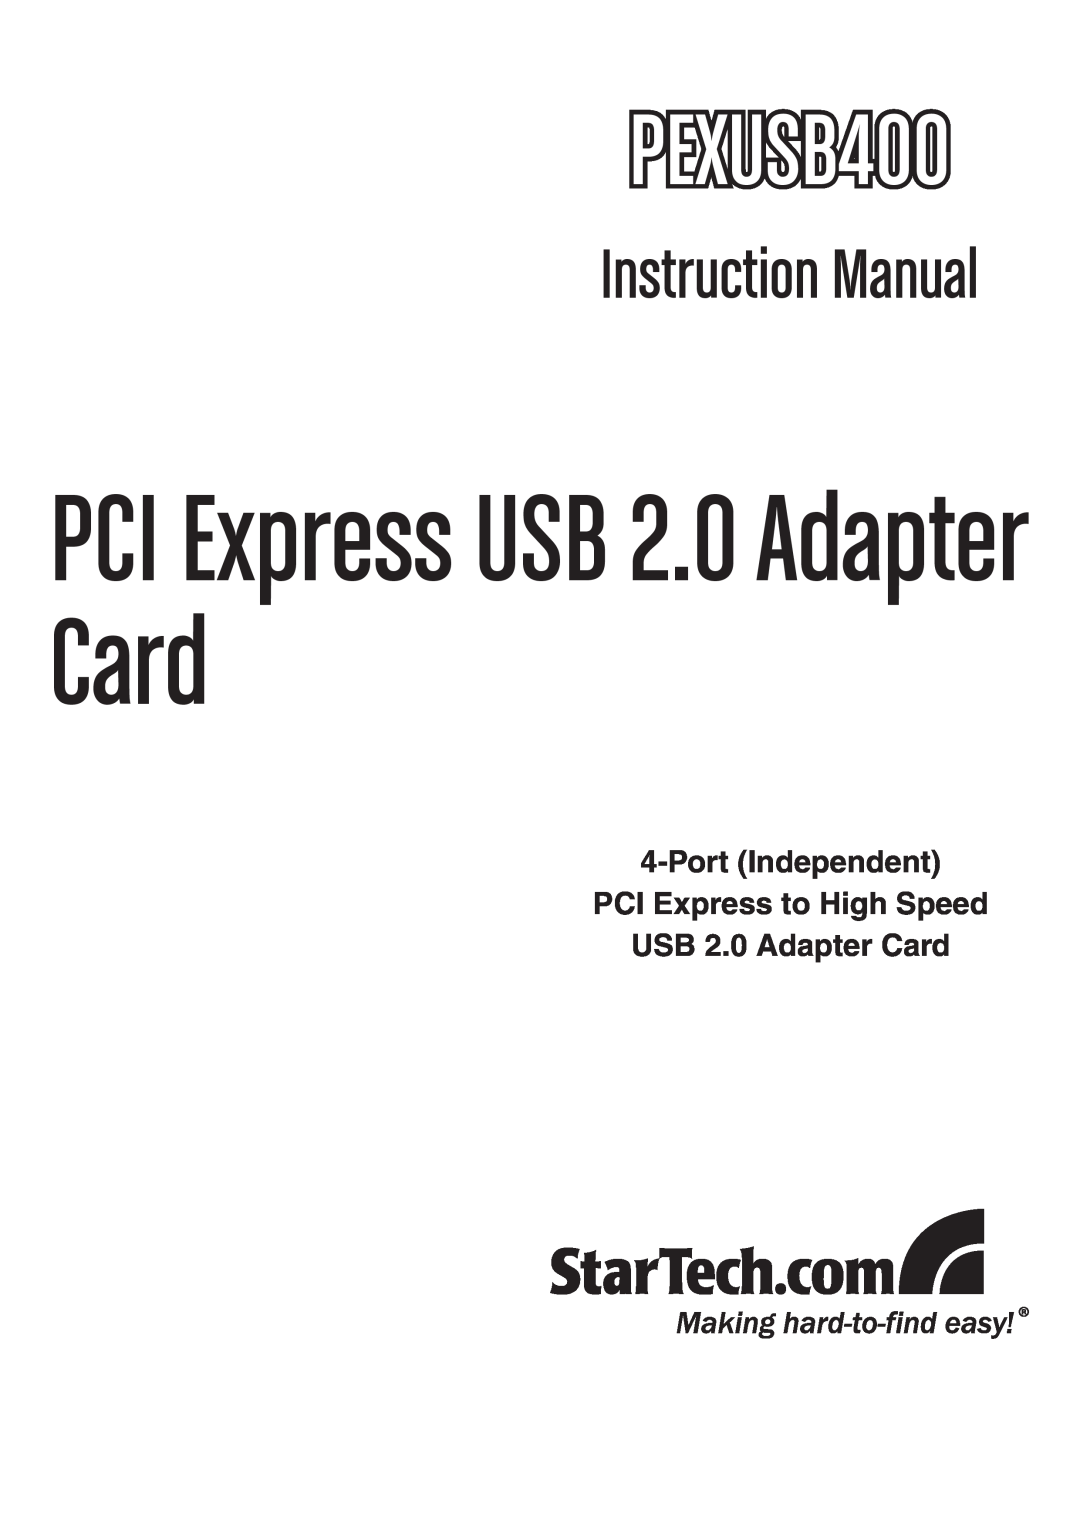 StarTech.com PEXUSB400 instruction manual PCI Express USB 2.0 Adapter Card 